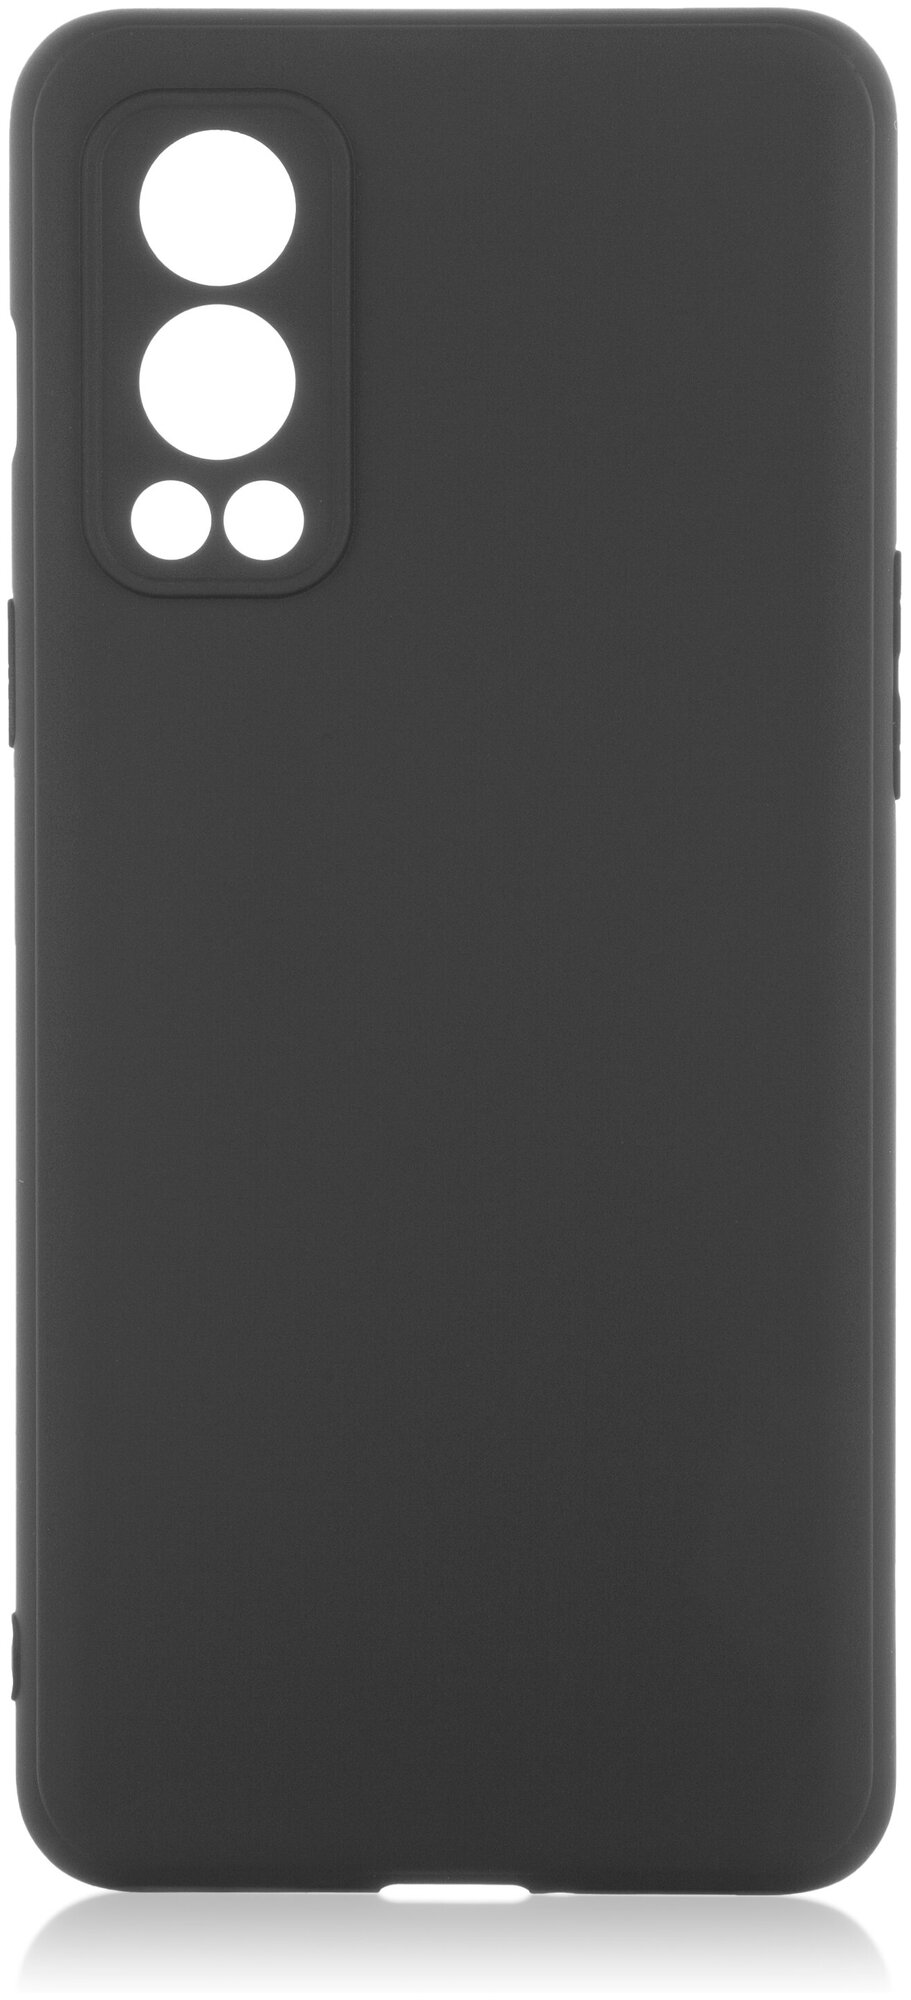 Чехол ROSCO для OnePlus Nord CE 2 (Ван Плюс Норд 2) силиконовый чехол, с бортиком (защитой) вокруг лока камеры, матовый, черный